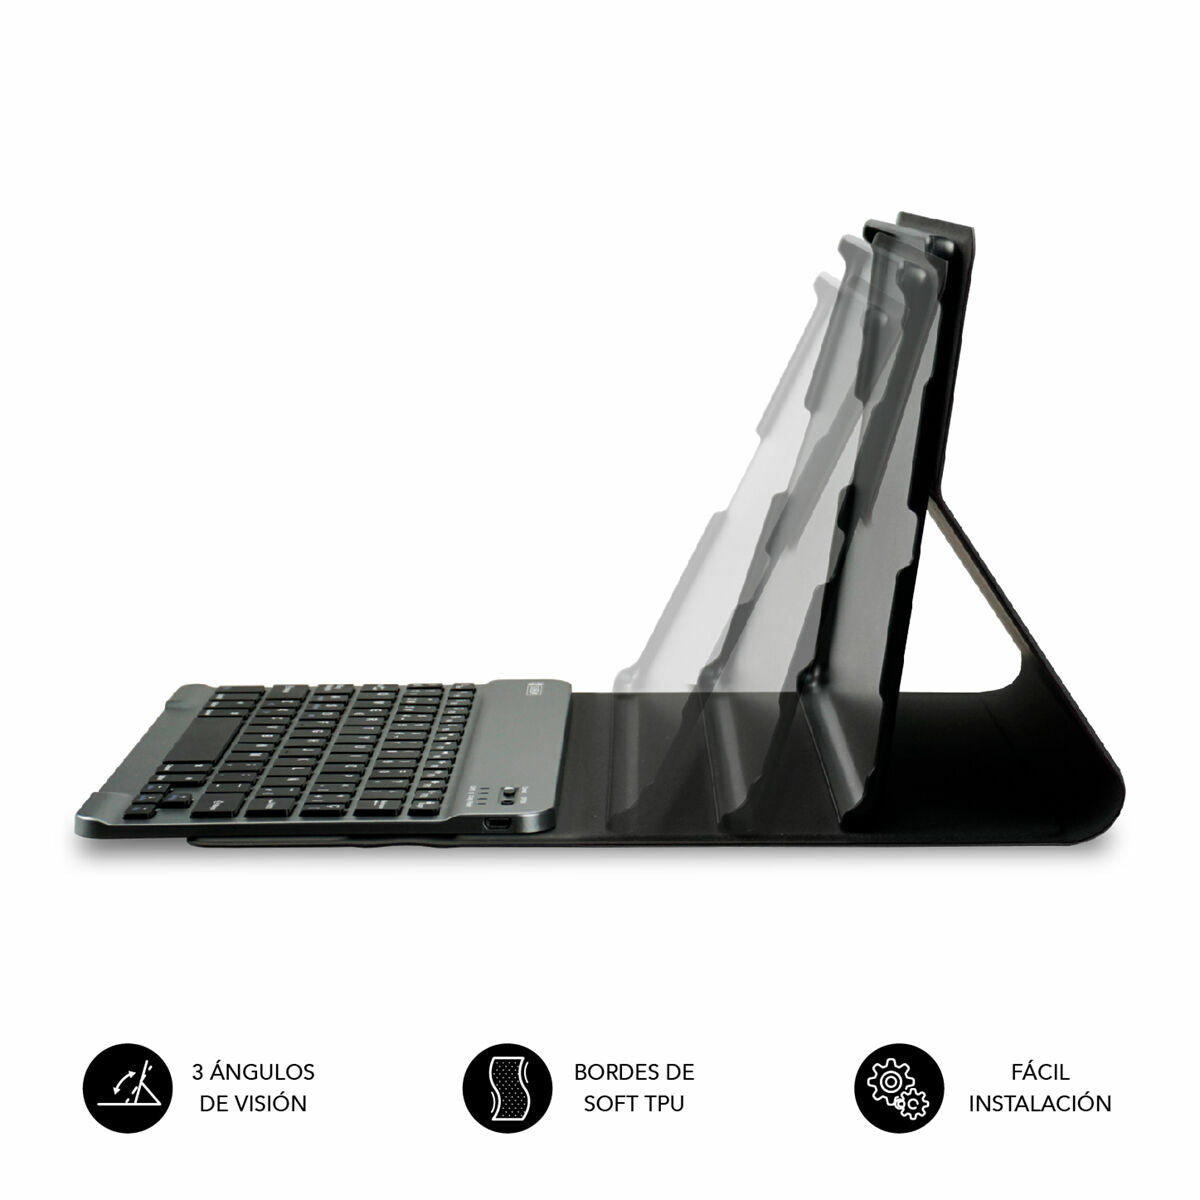 Funda para Tablet y Teclado Subblim Lenovo Tab M10 Plus Negro 10,6" Qwerty Español QWERTY